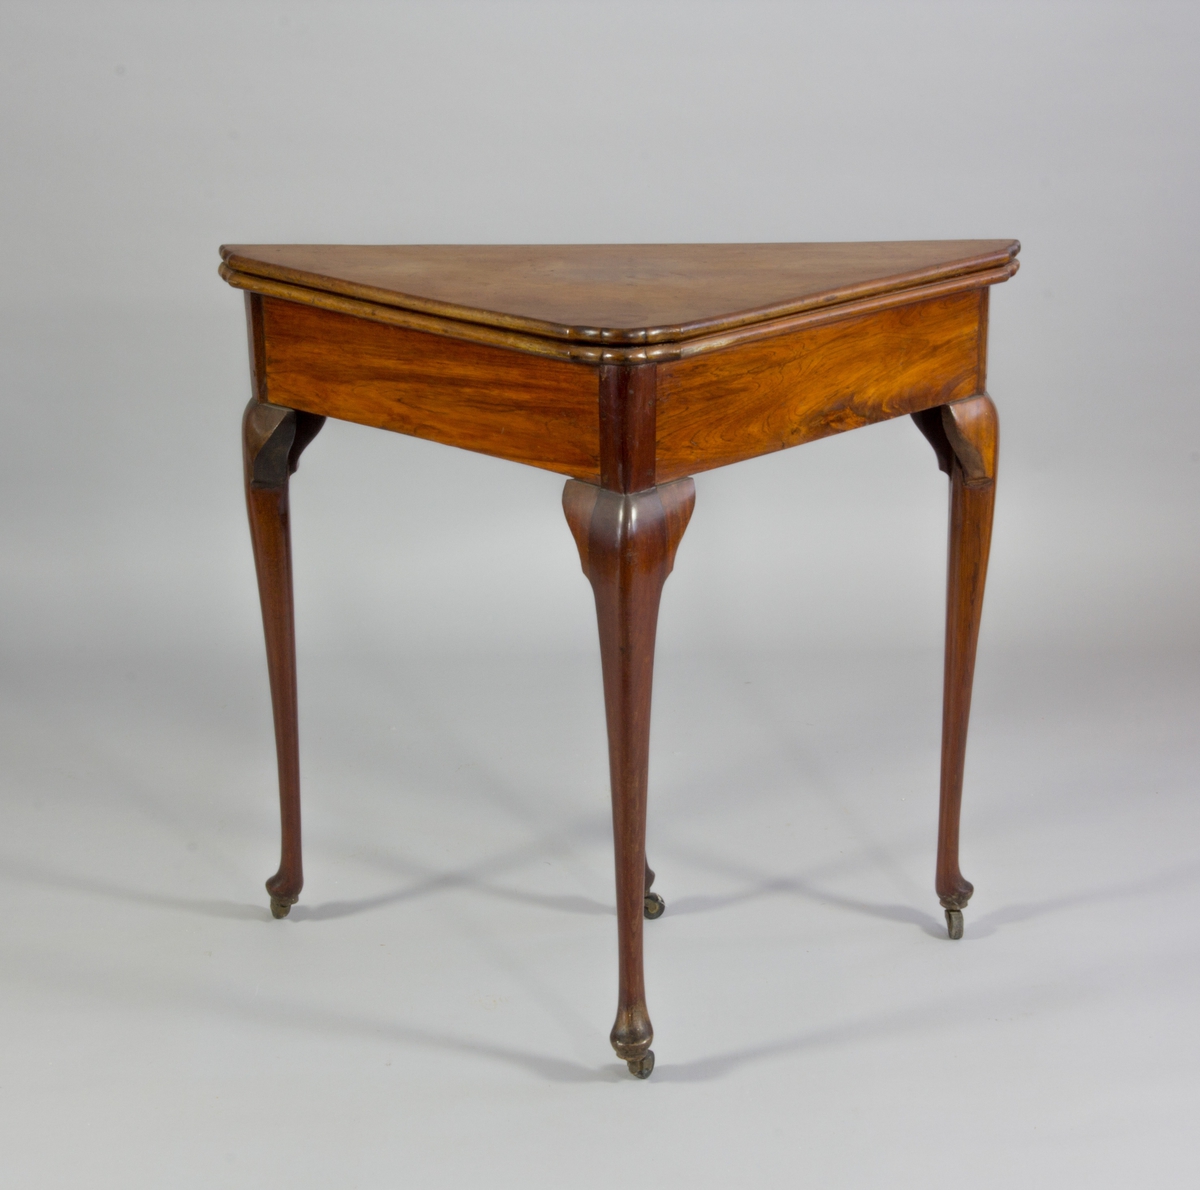 Spelbord, trekantigt med svängda ben. I uppfällt läge är bordet kvadratiskt, fällskivan stöds av ett ben som dras fram ur sargen. Två lådor med mässingsknappar. Skivans klädsel av grönt ylle. 

Klädseln av ett senare datum,  tidigt 1900-tal.